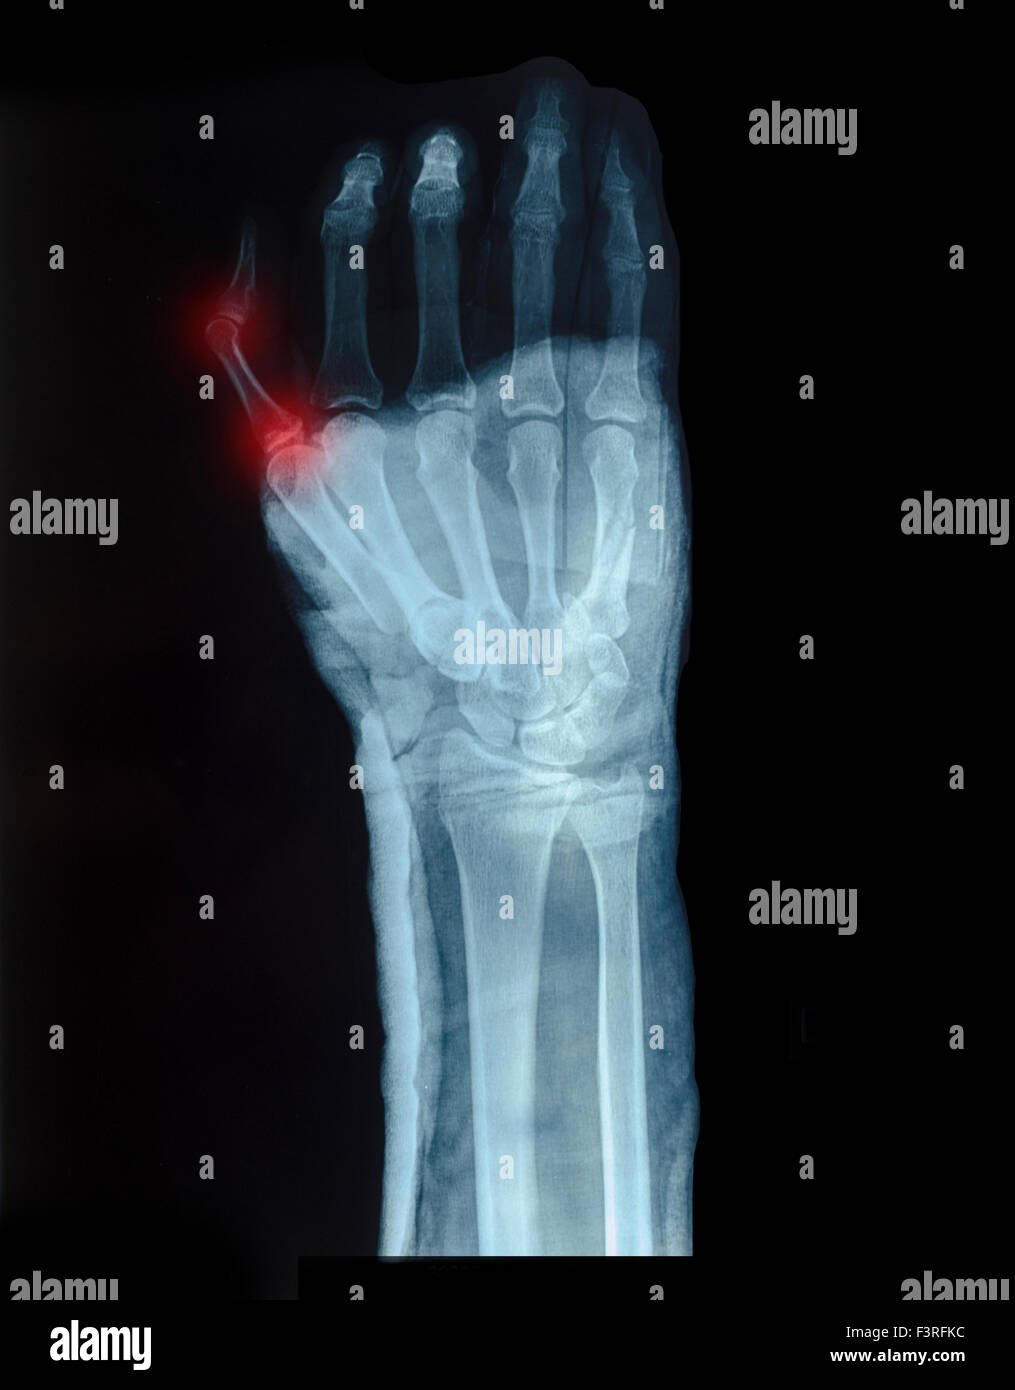 X-ray image de main humaine avec de petits doigts montré de fracture rouge Banque D'Images